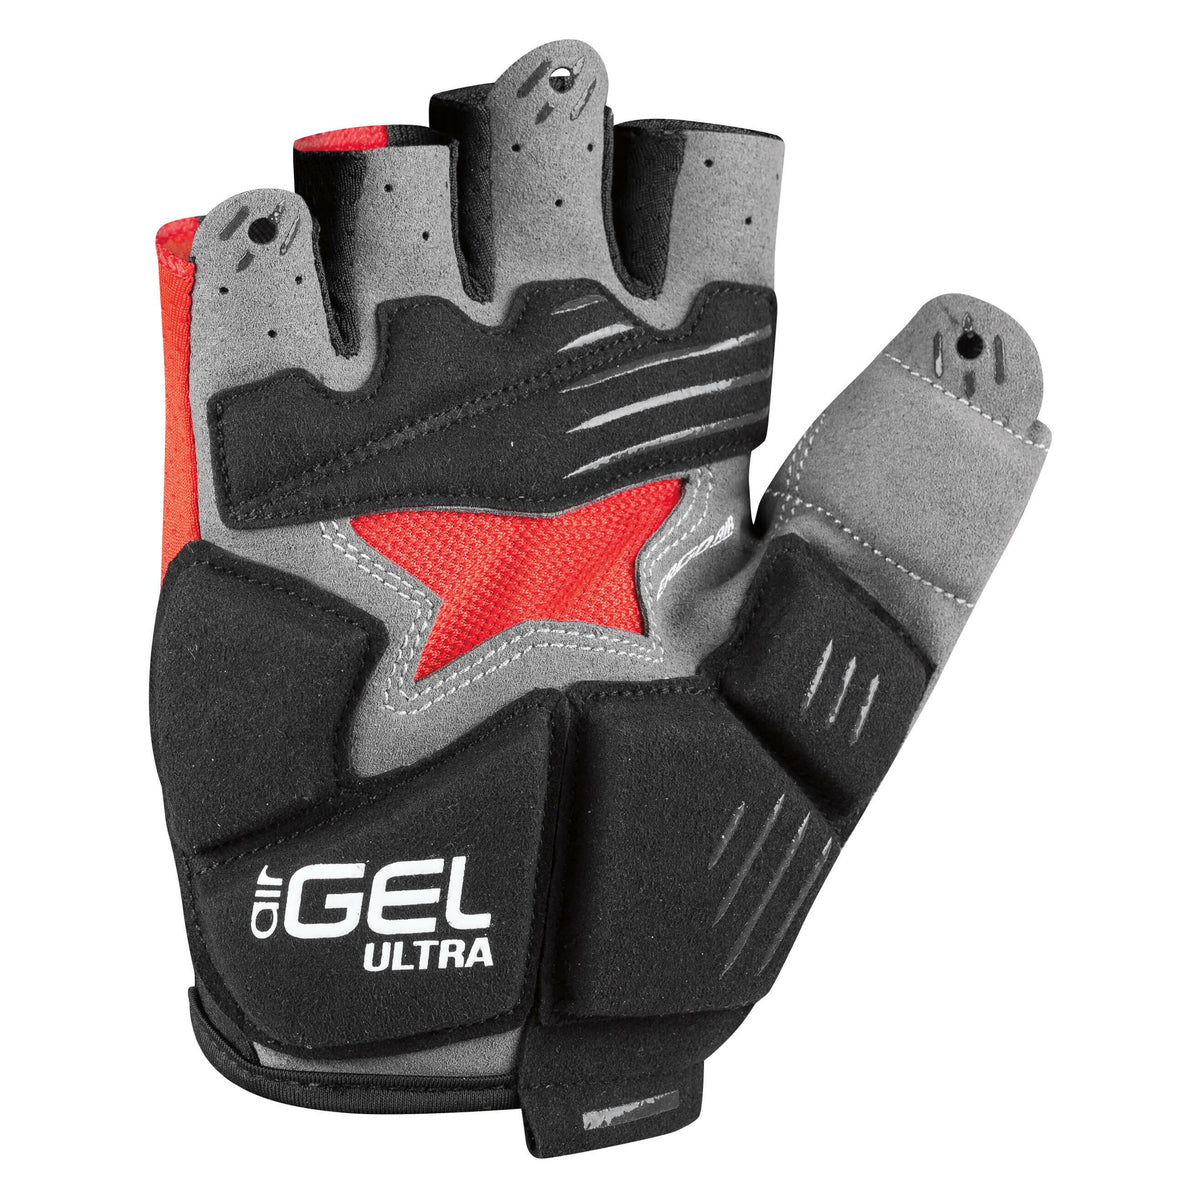 Louis Garneau Air Gel Ultra Cycling Glove